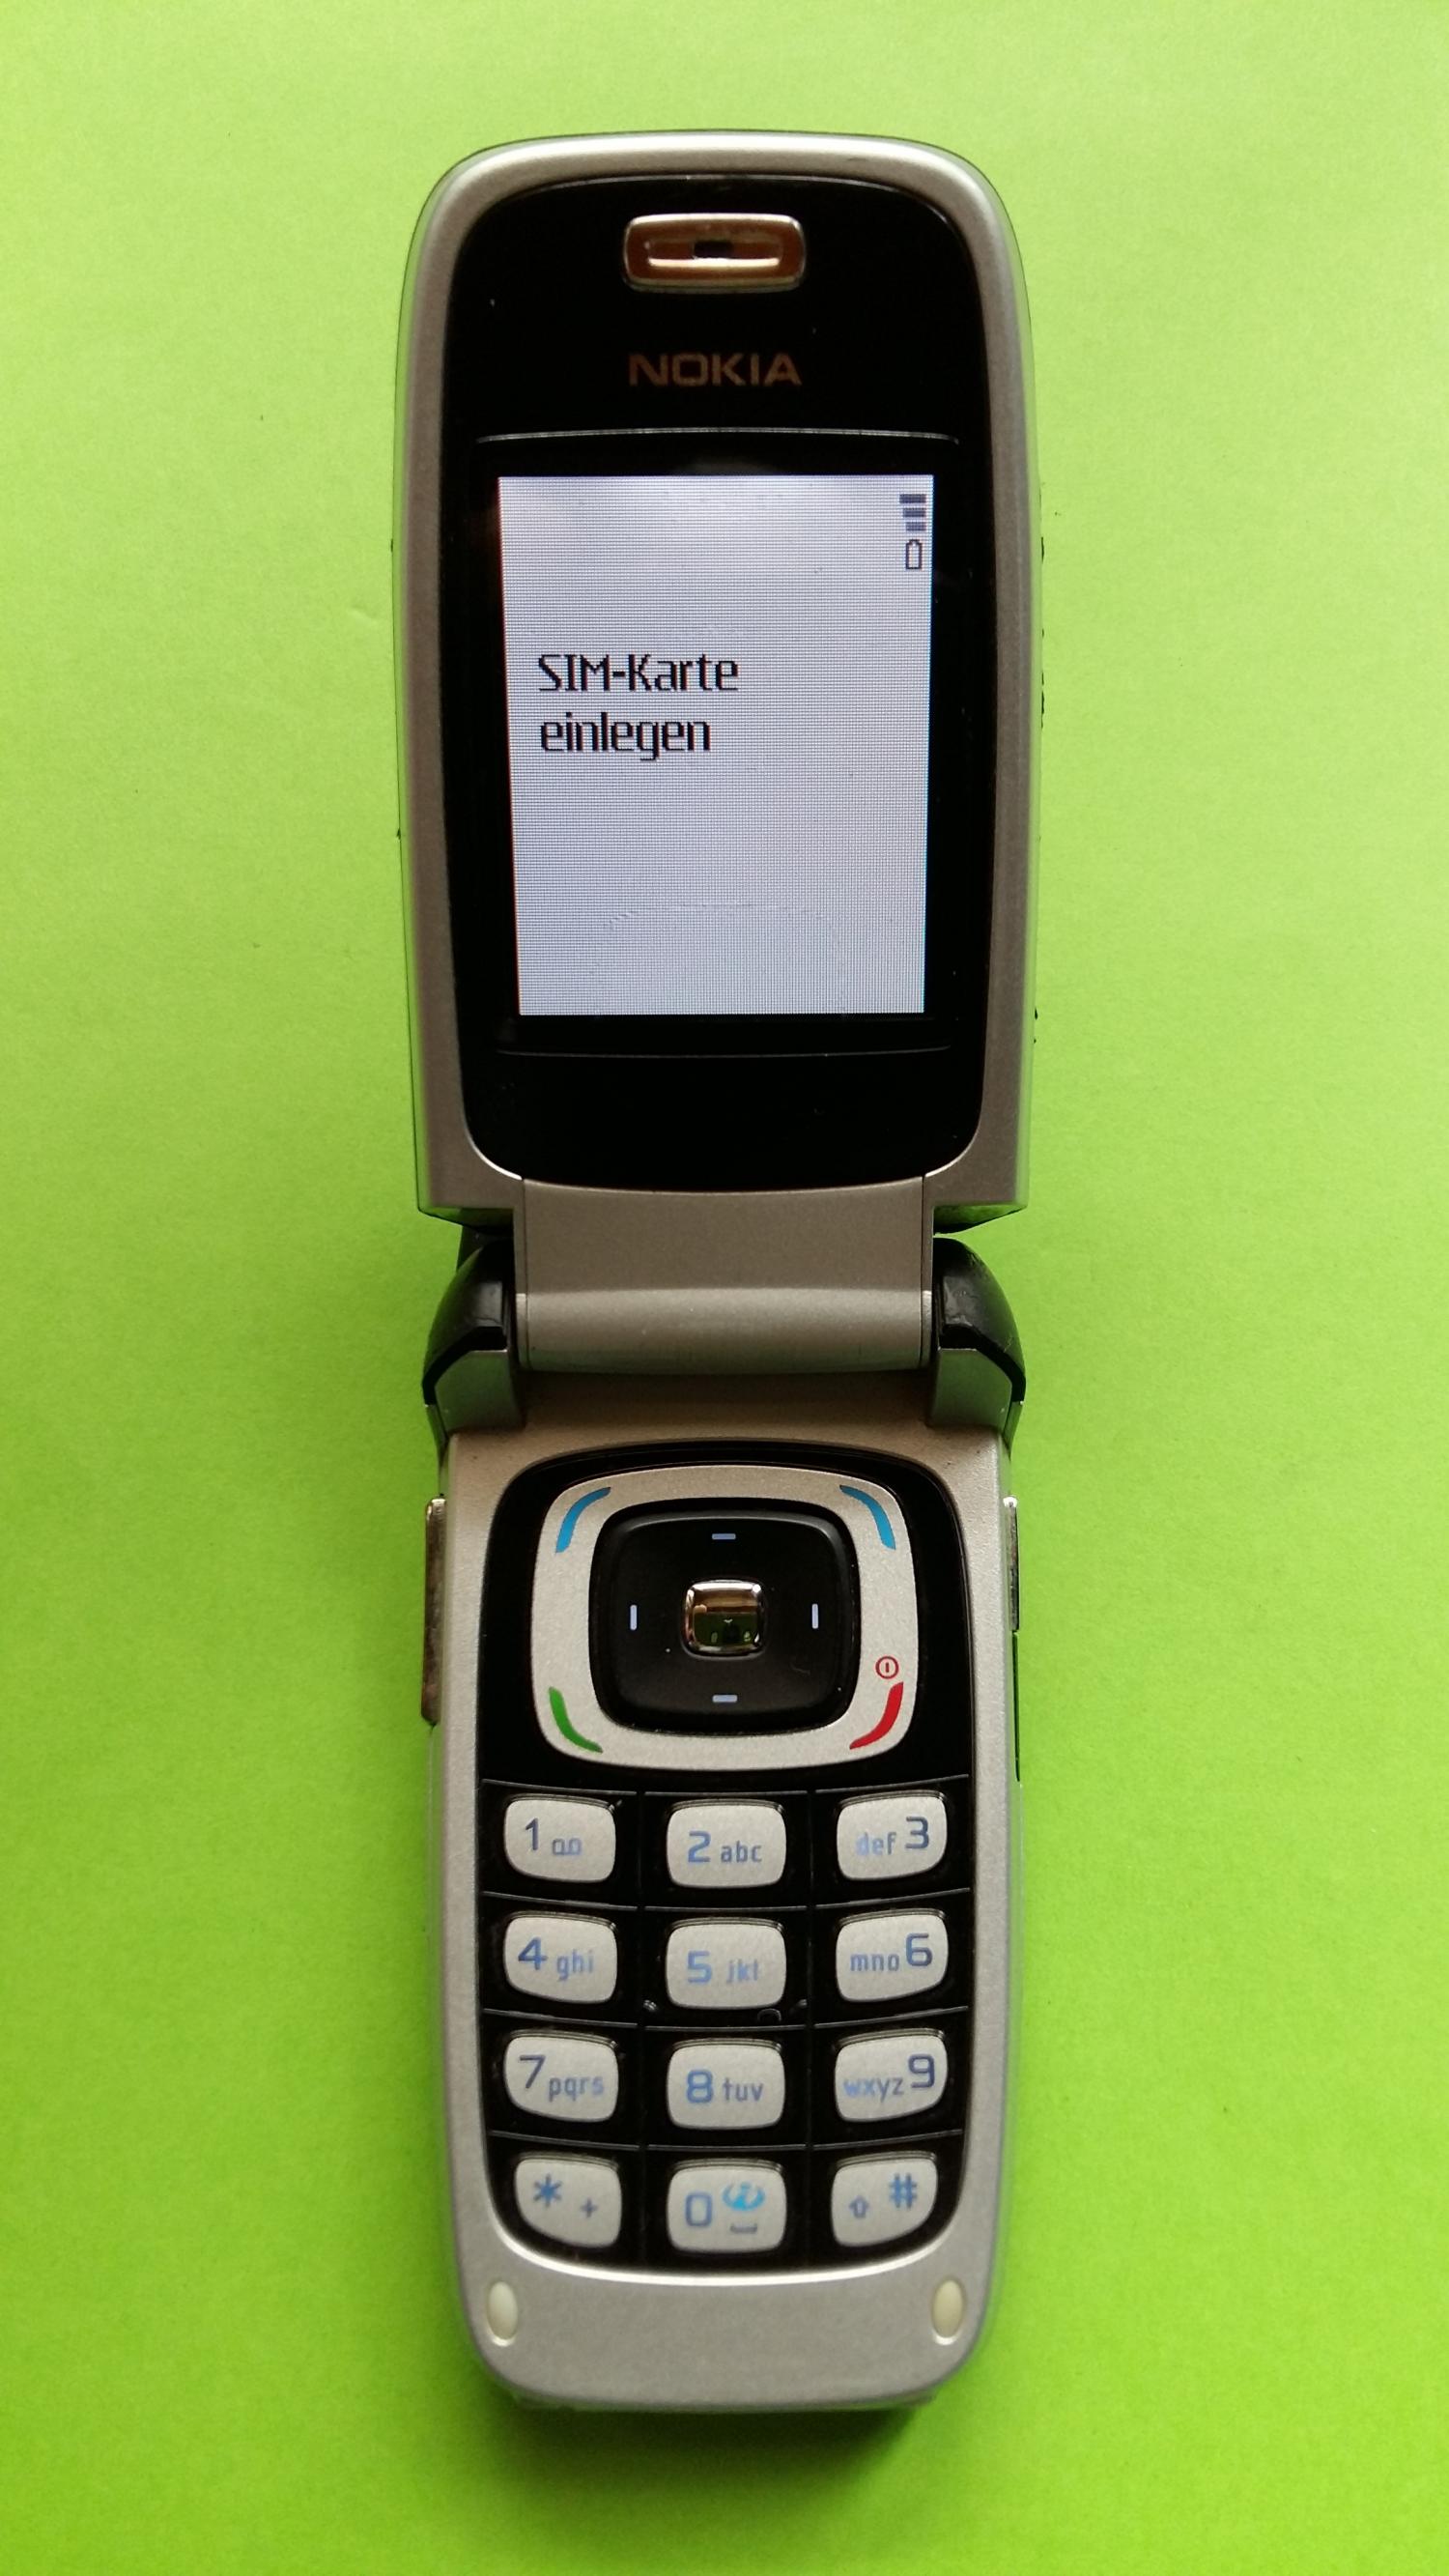 image-7324102-Nokia 6103 (5)2.jpg